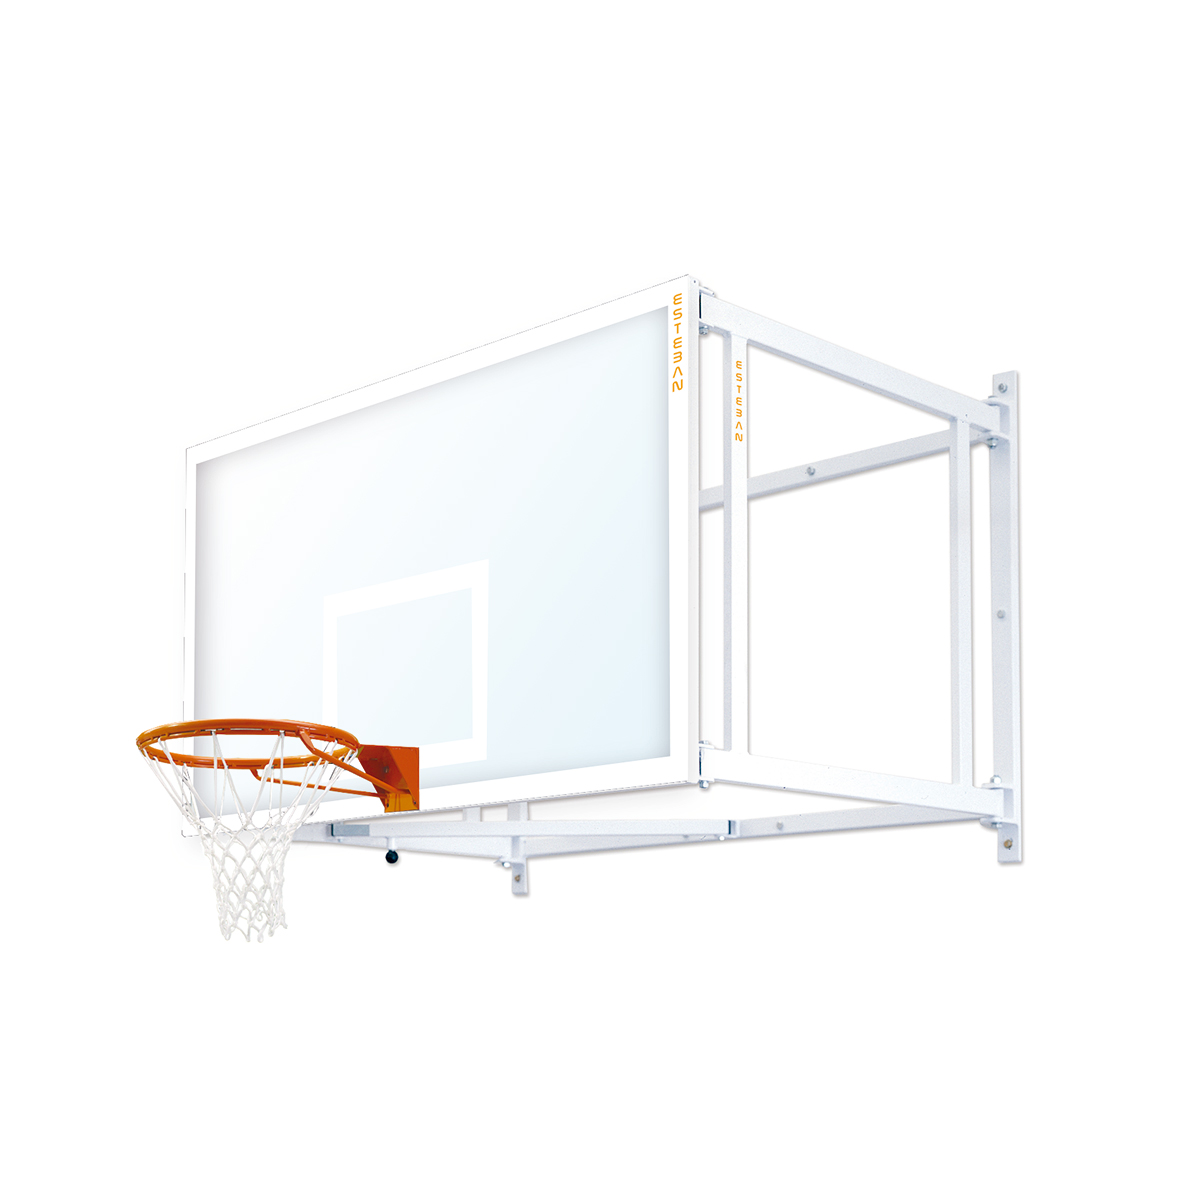 Canasta baloncesto abatible lateralmente tablero impermeable BP12501-1 - ESTEBAN  SG&E